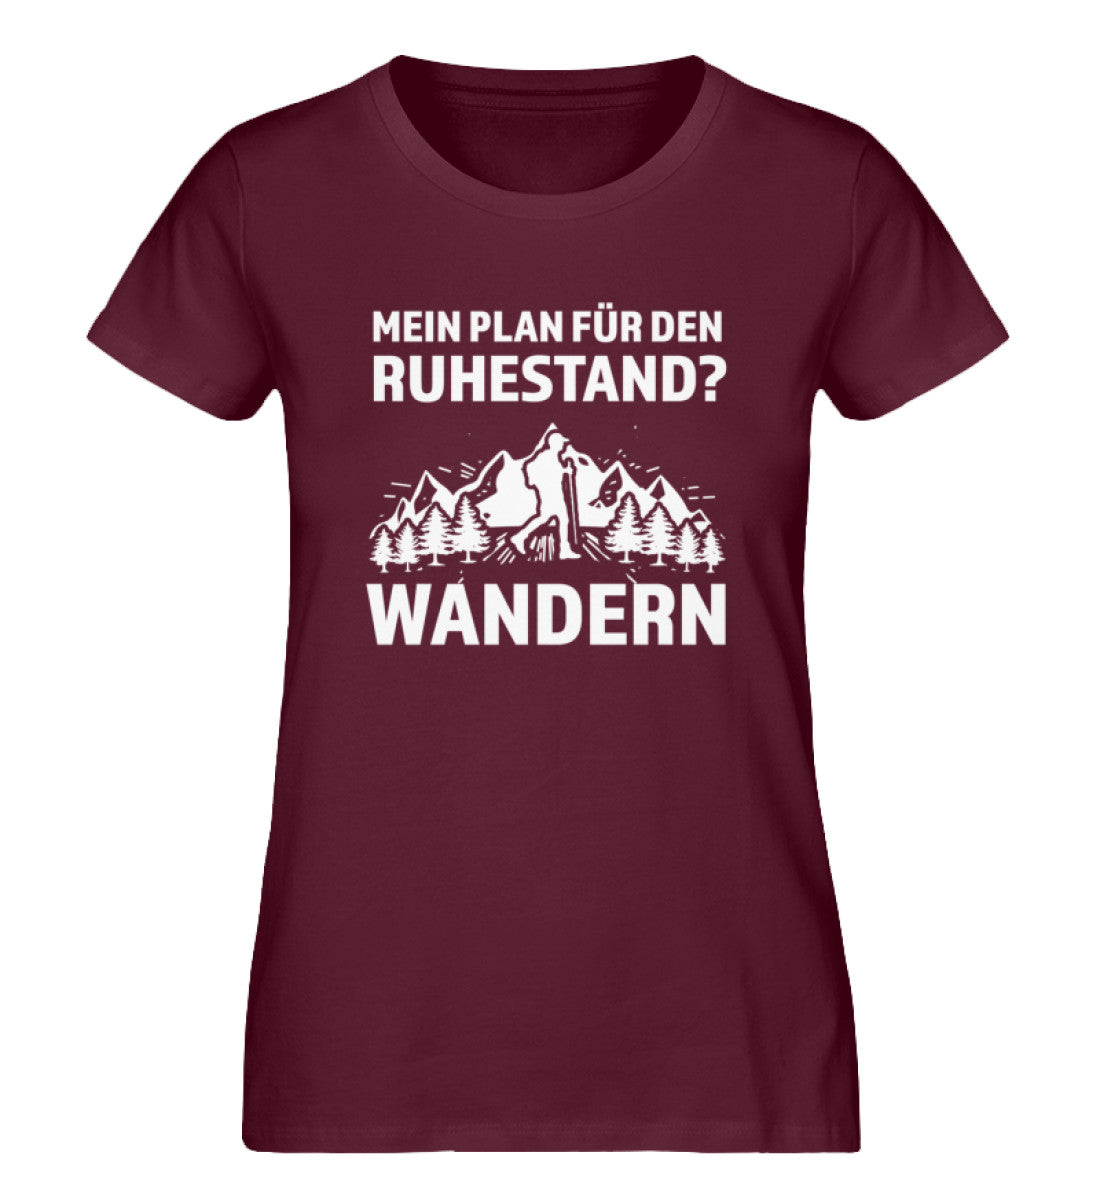 Plan für den Ruhestand - Wandern - Damen Organic T-Shirt wandern Weinrot